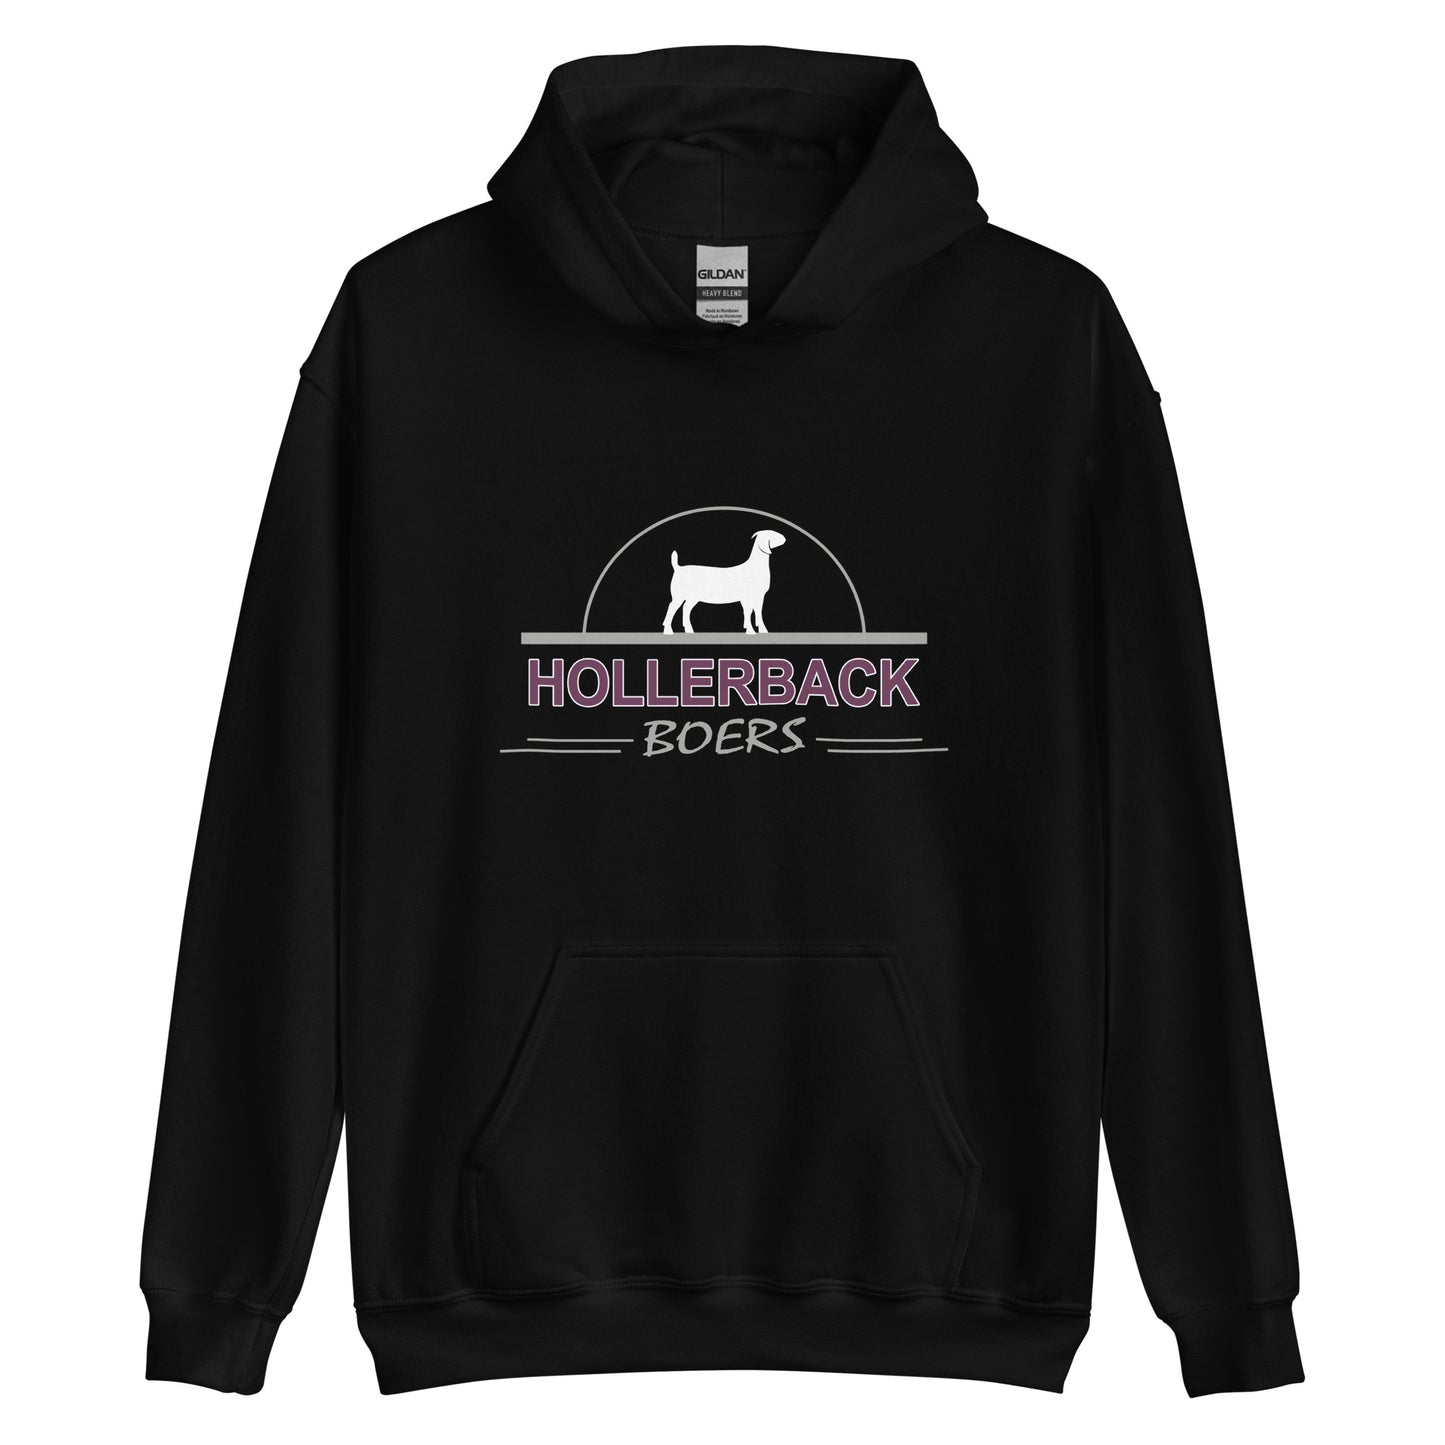 HOLLERBACK BOERS - Unisex Hoodie